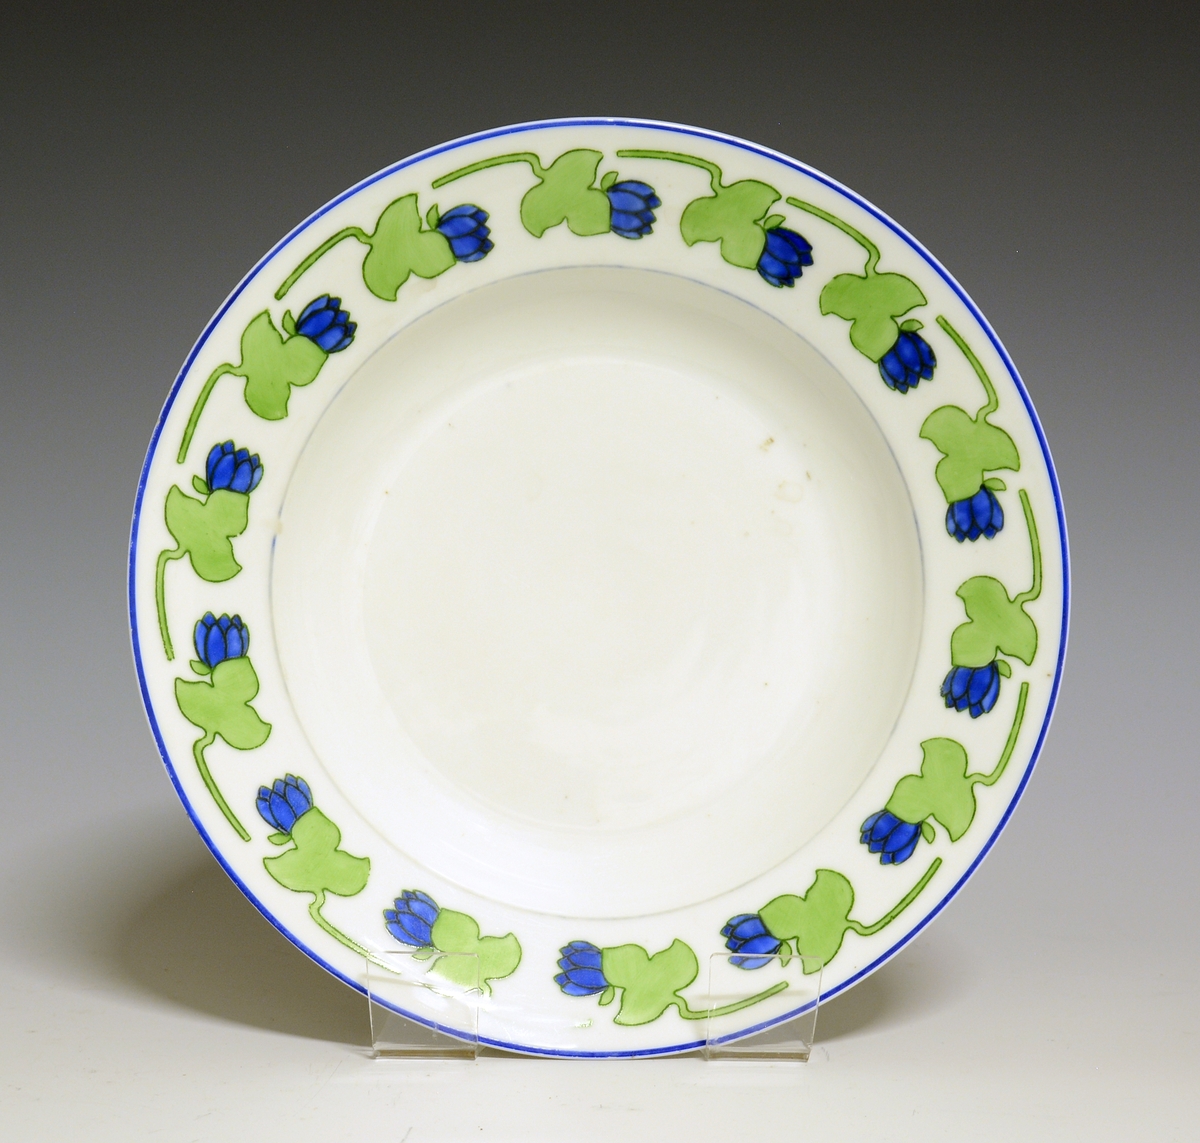 Dyp tallerken i porselen. Hvit glasur. Stilisert bord med blå blomst og grønt blad rundt  fanen.
Modellnr: 15.2
